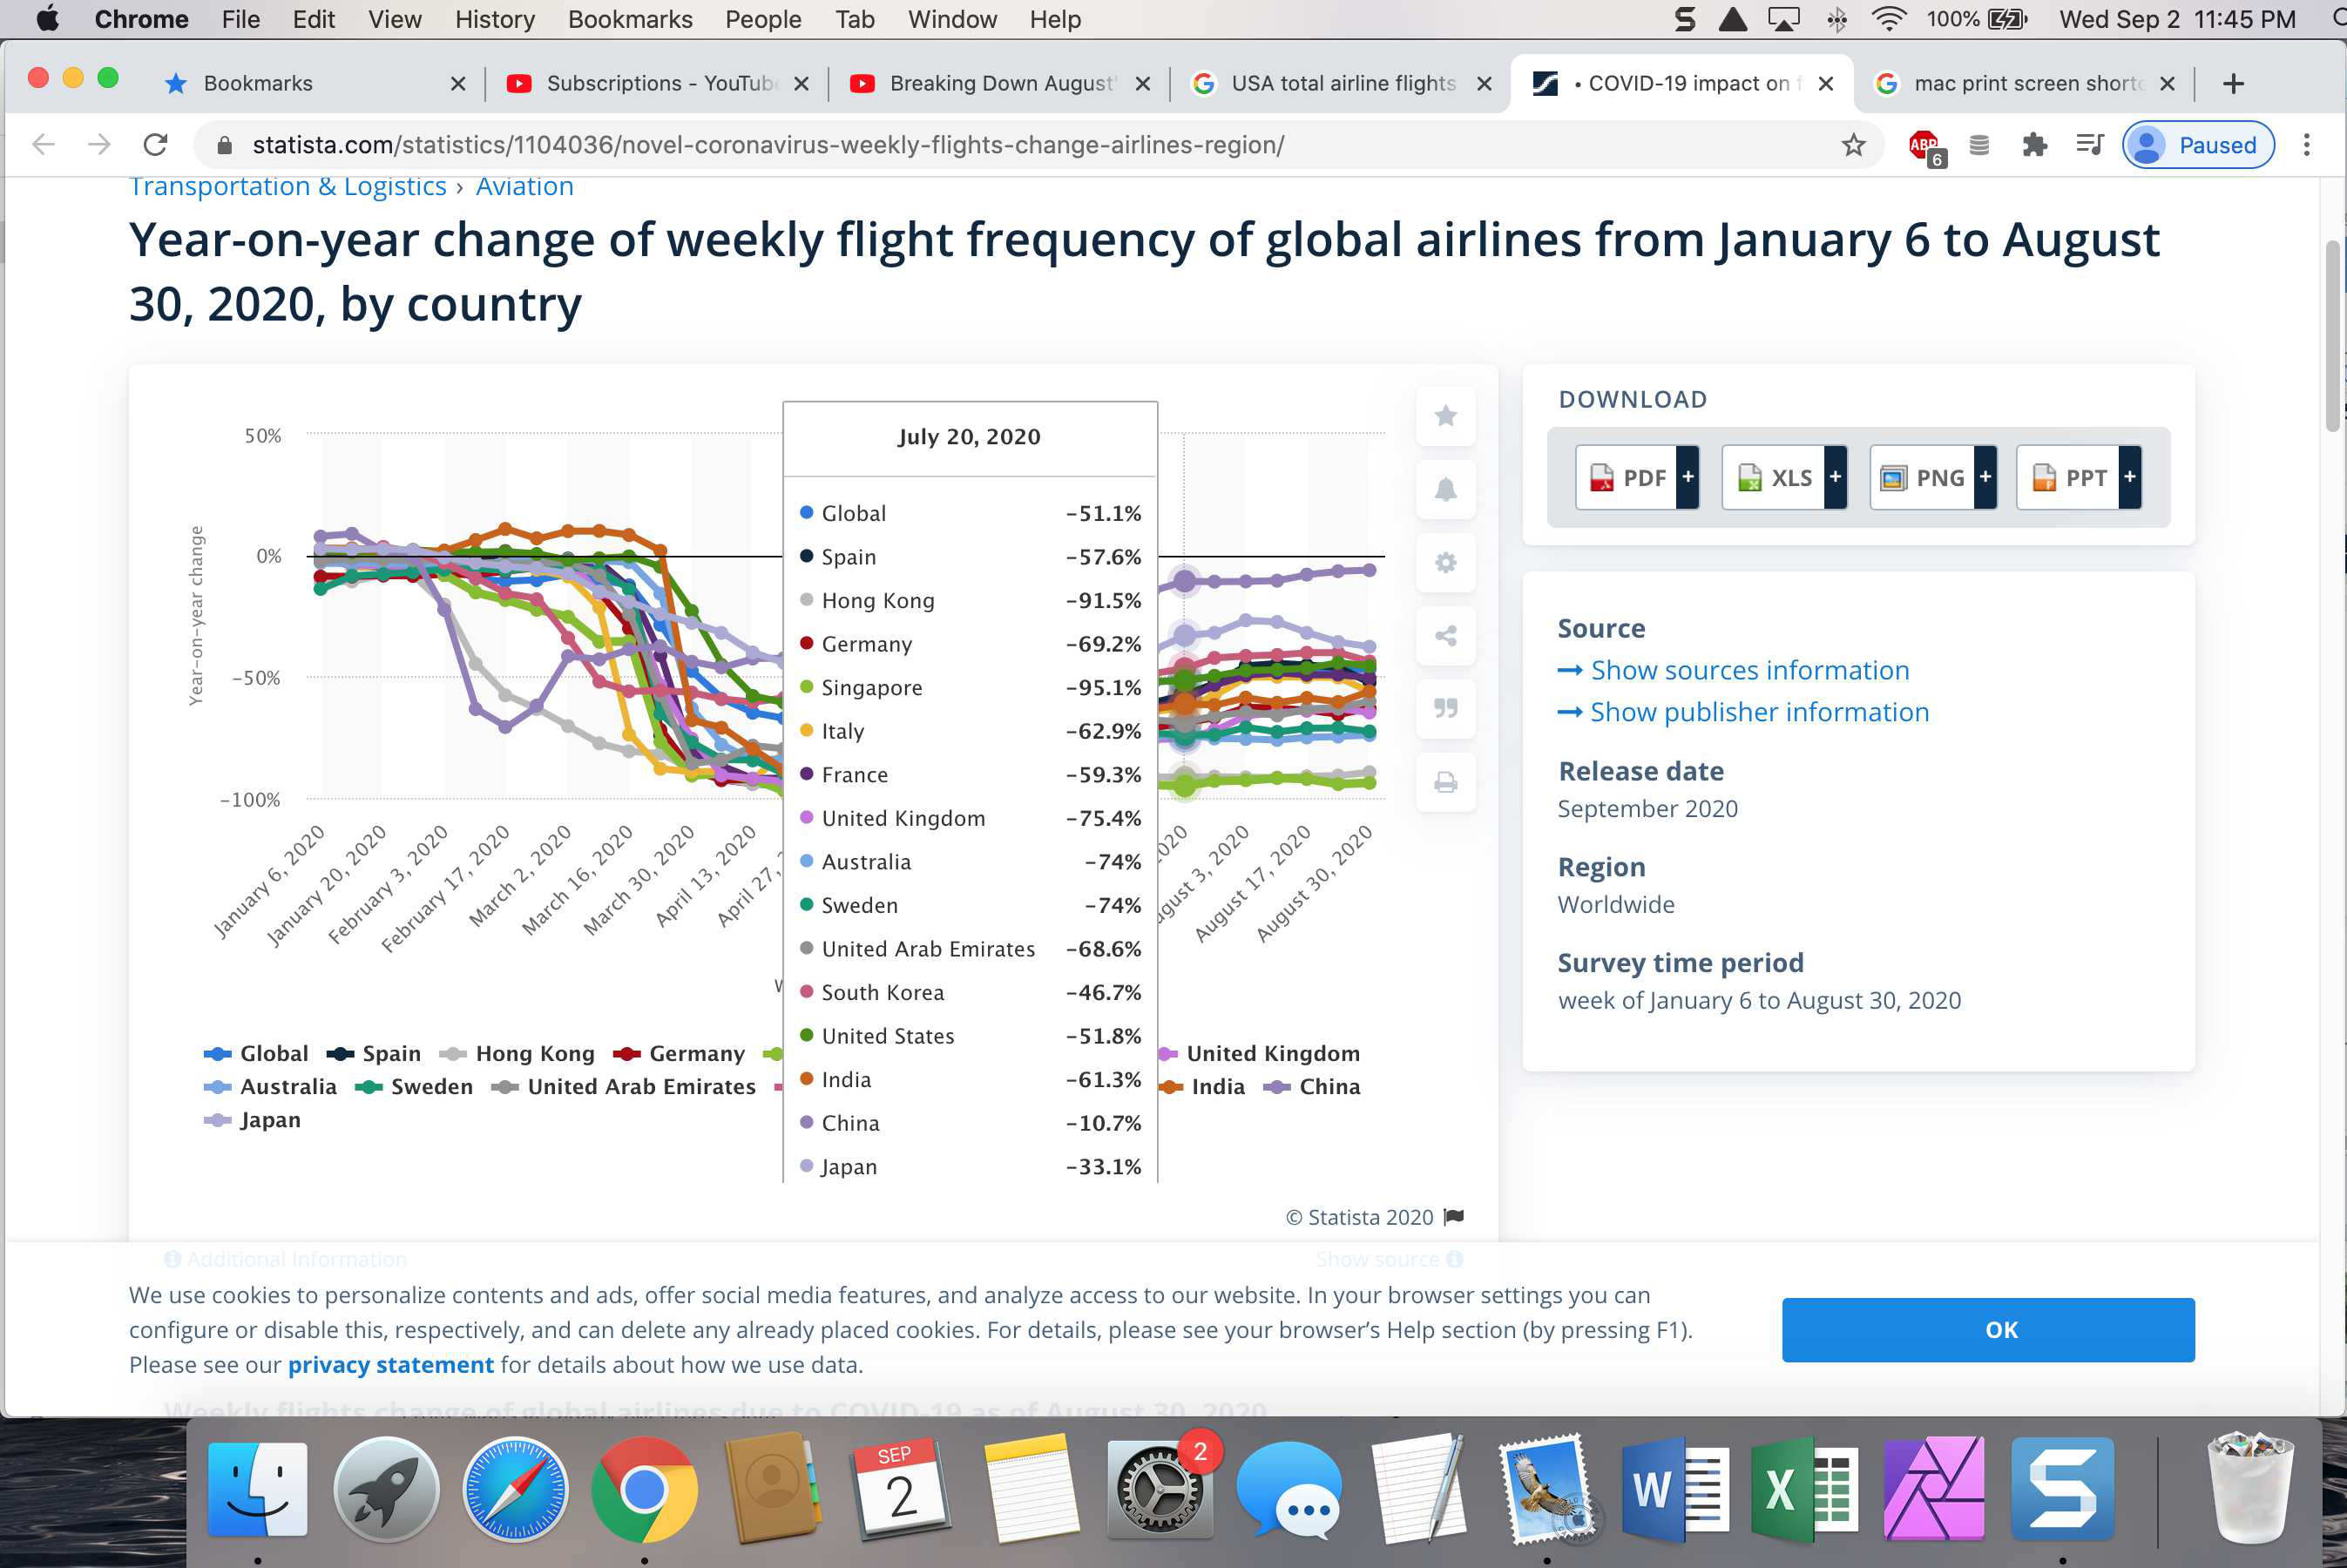 World wide airline flights 3.jpg